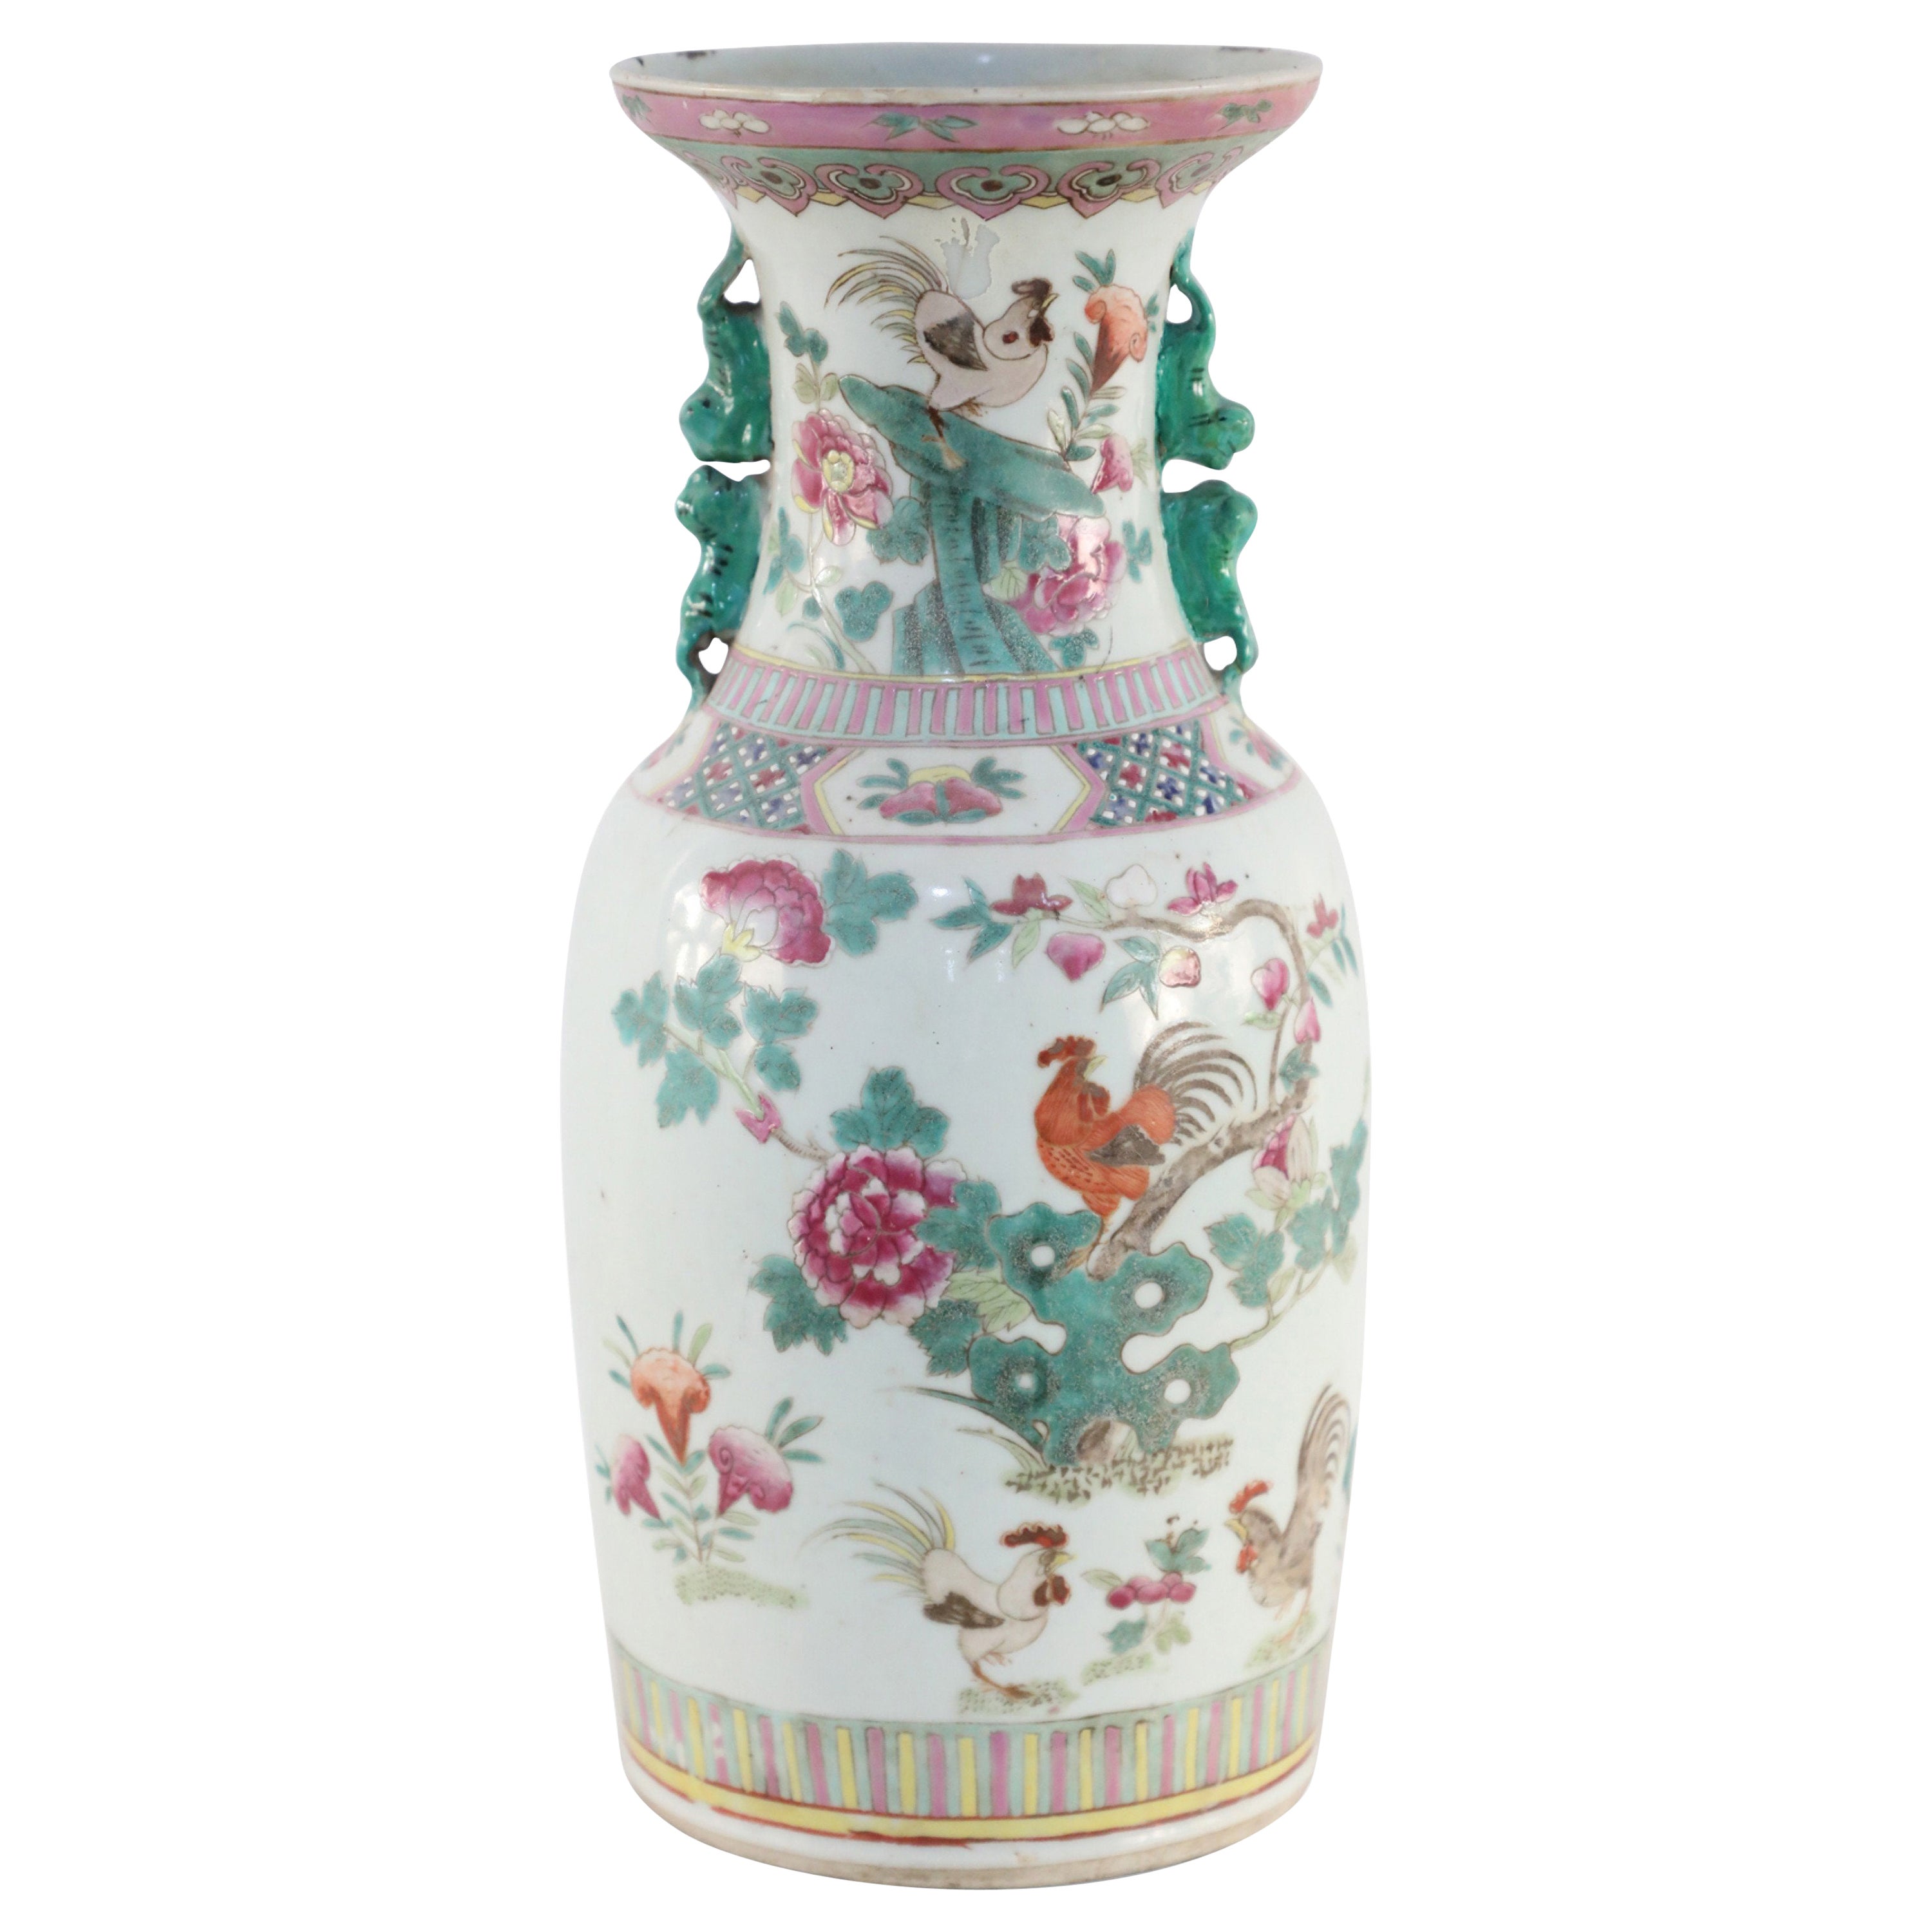 Chinesische chinesische Porzellanurne in Weiß, Grün und Rosa mit Blumen- und Hahnenmuster